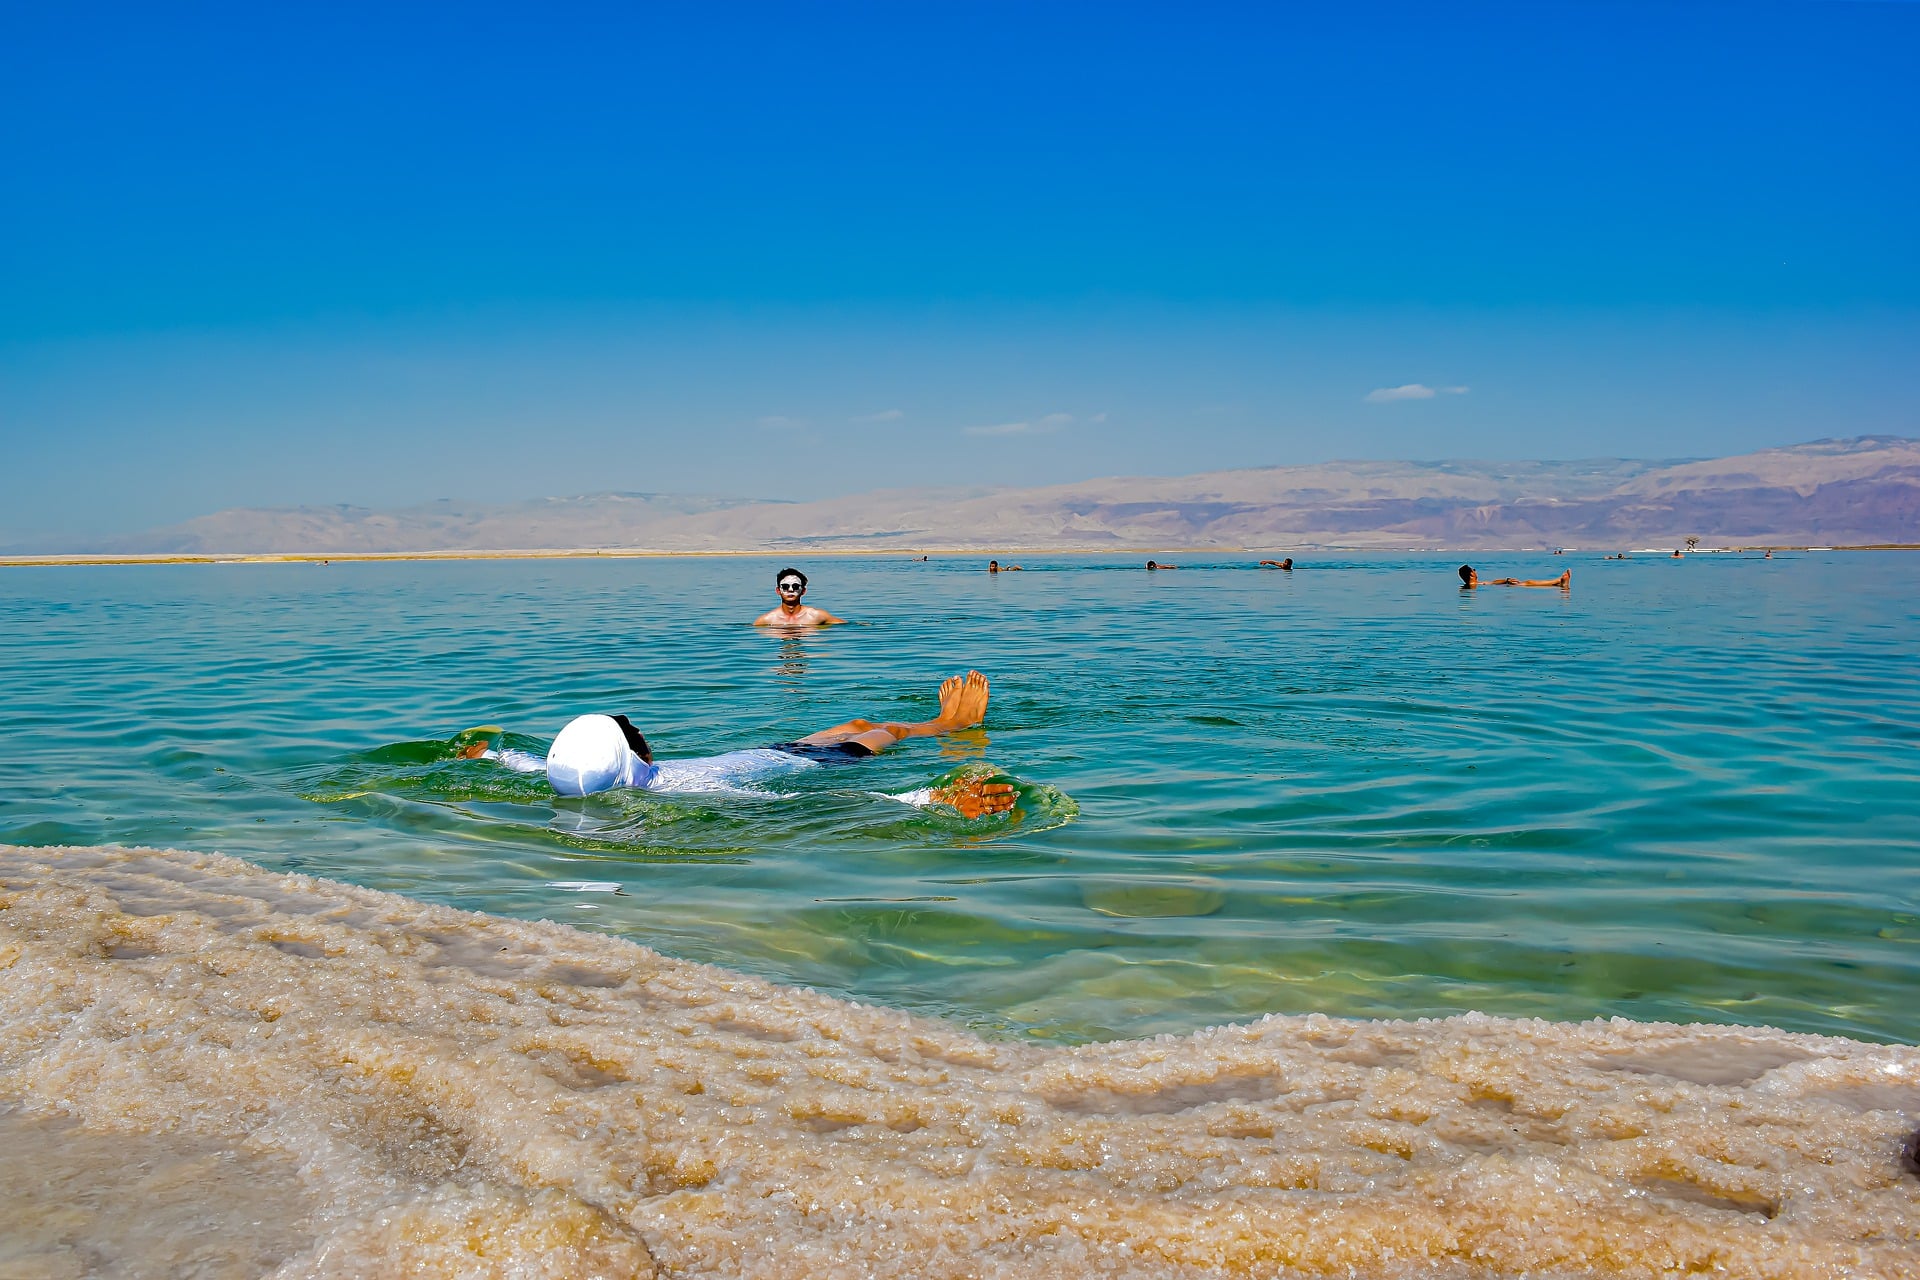 死海の美しい景色のHD壁紙 #13 - 1920x1080 壁紙ダウンロード - 死海の美しい景色のHD壁紙 - 風景 壁紙 - V3の壁紙